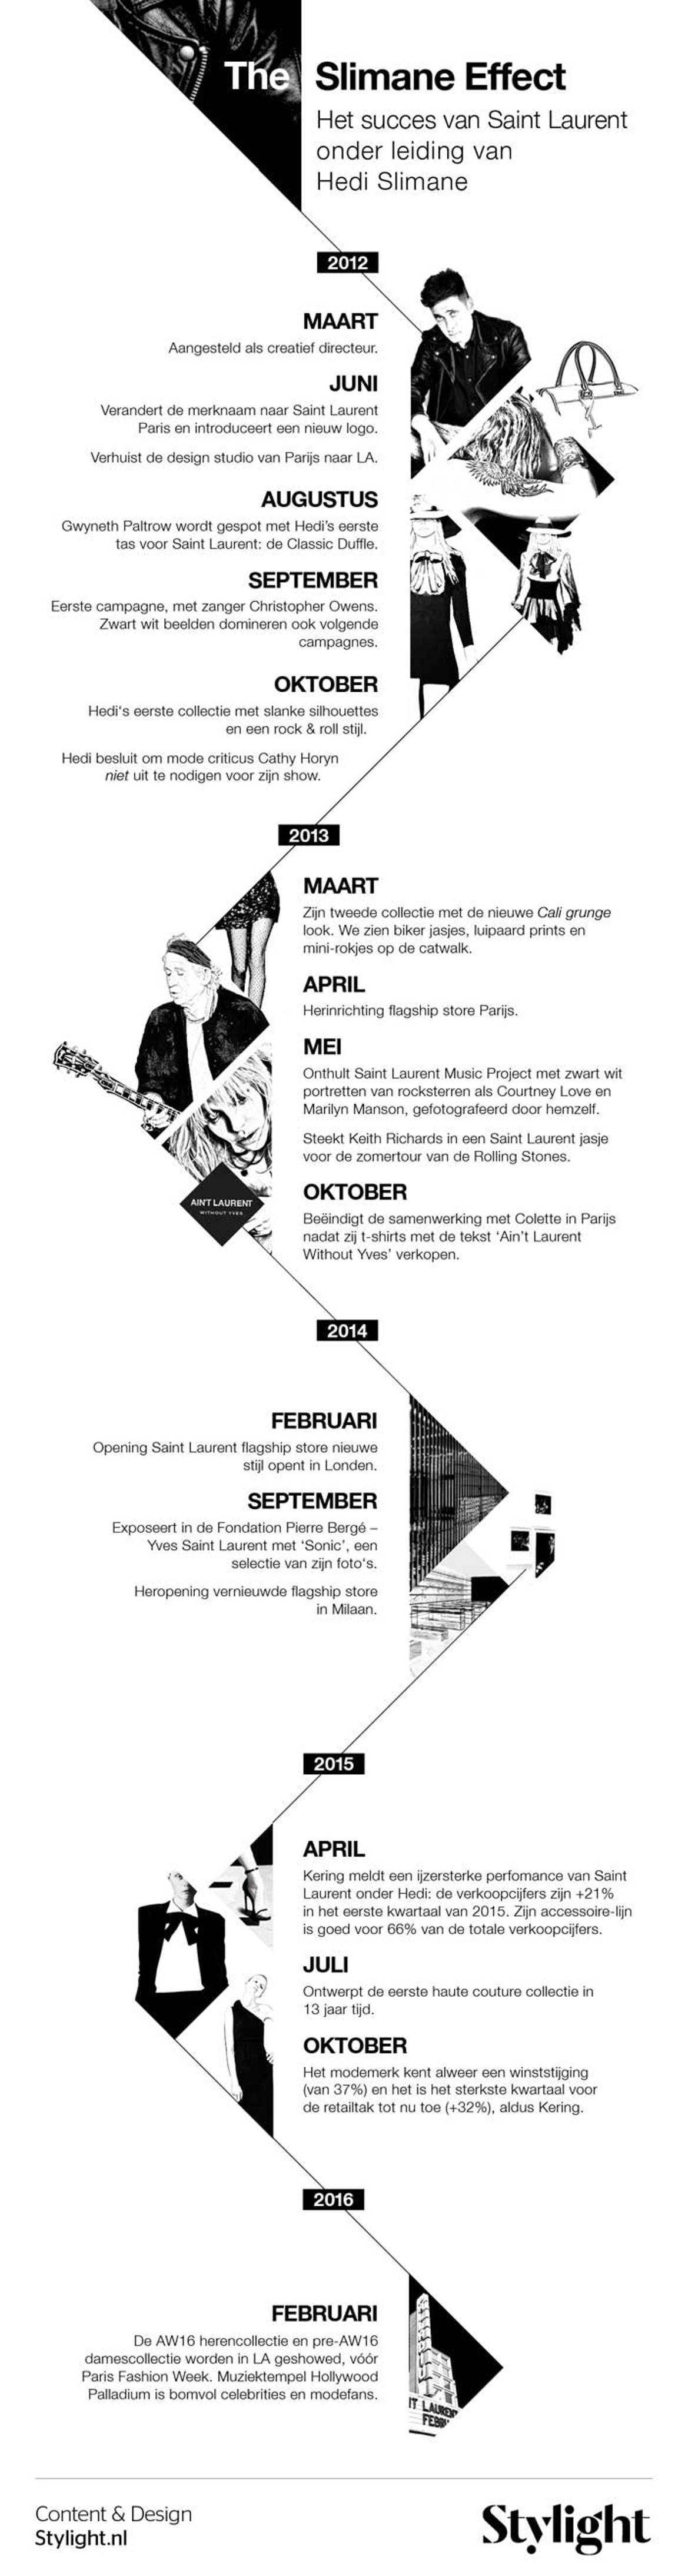 Infographic - Hedi Slimane verlaat Saint Laurent, het Slimane Effect